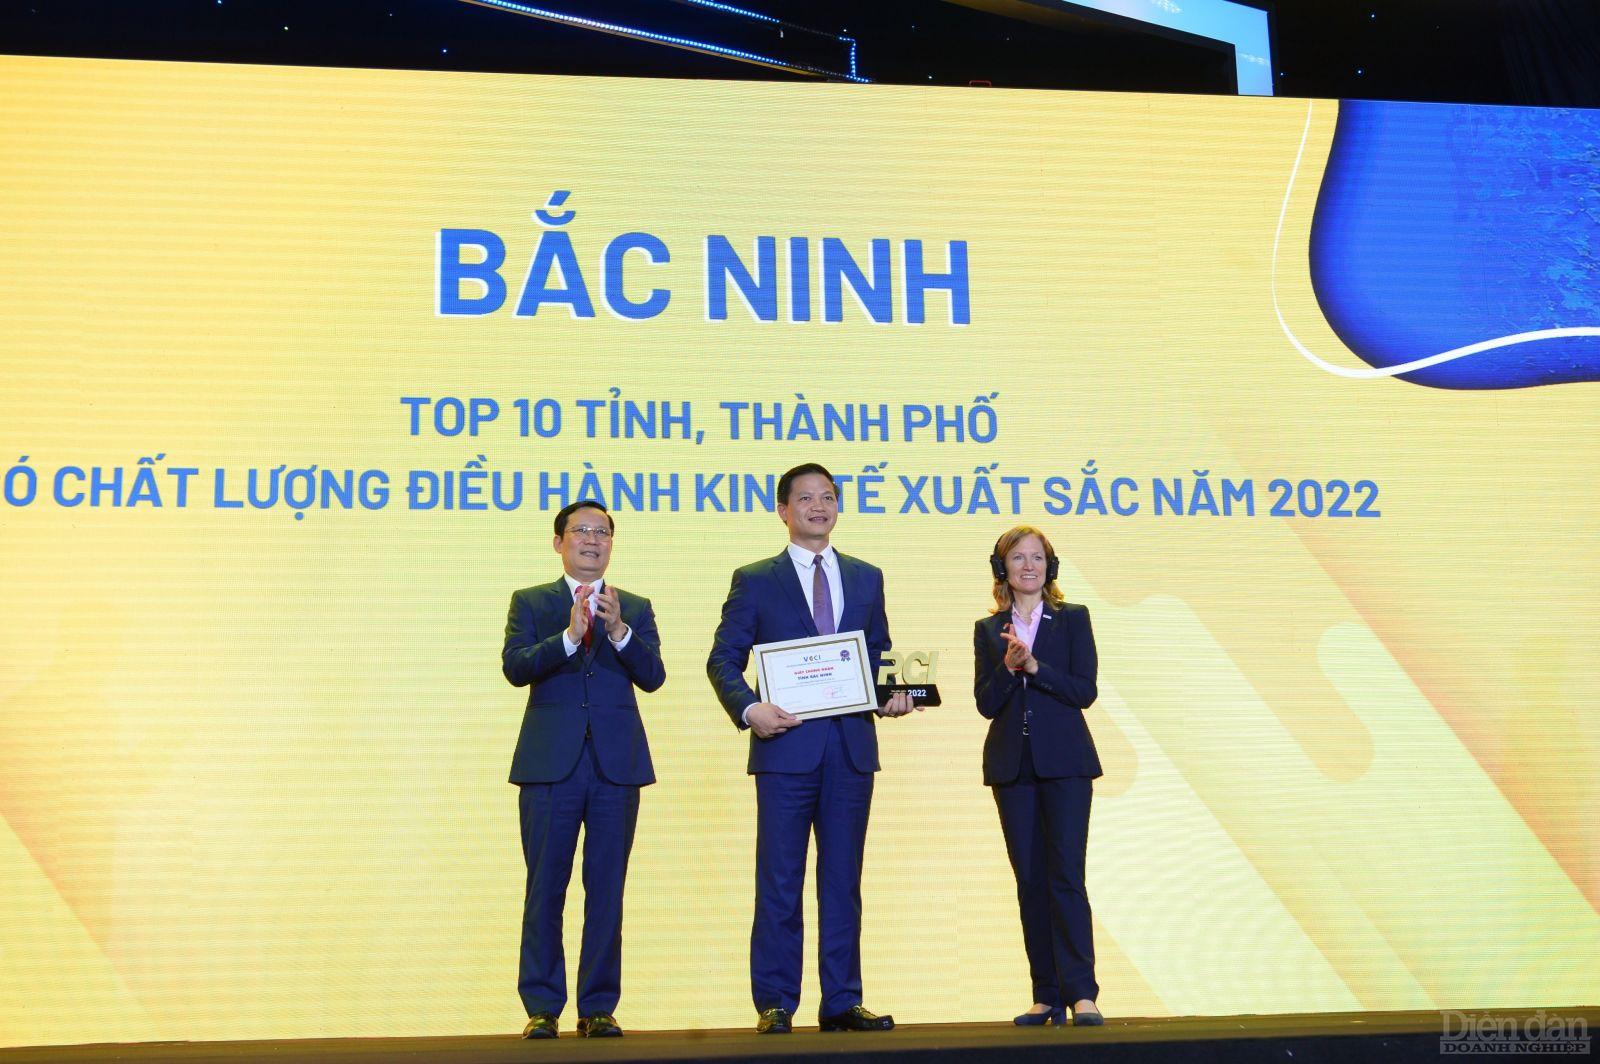 Bắc Ninh tiếp tục nằm trong Top 10 các tỉnh có chất lượng điều hành kinh tế xuất sắc năm 2022